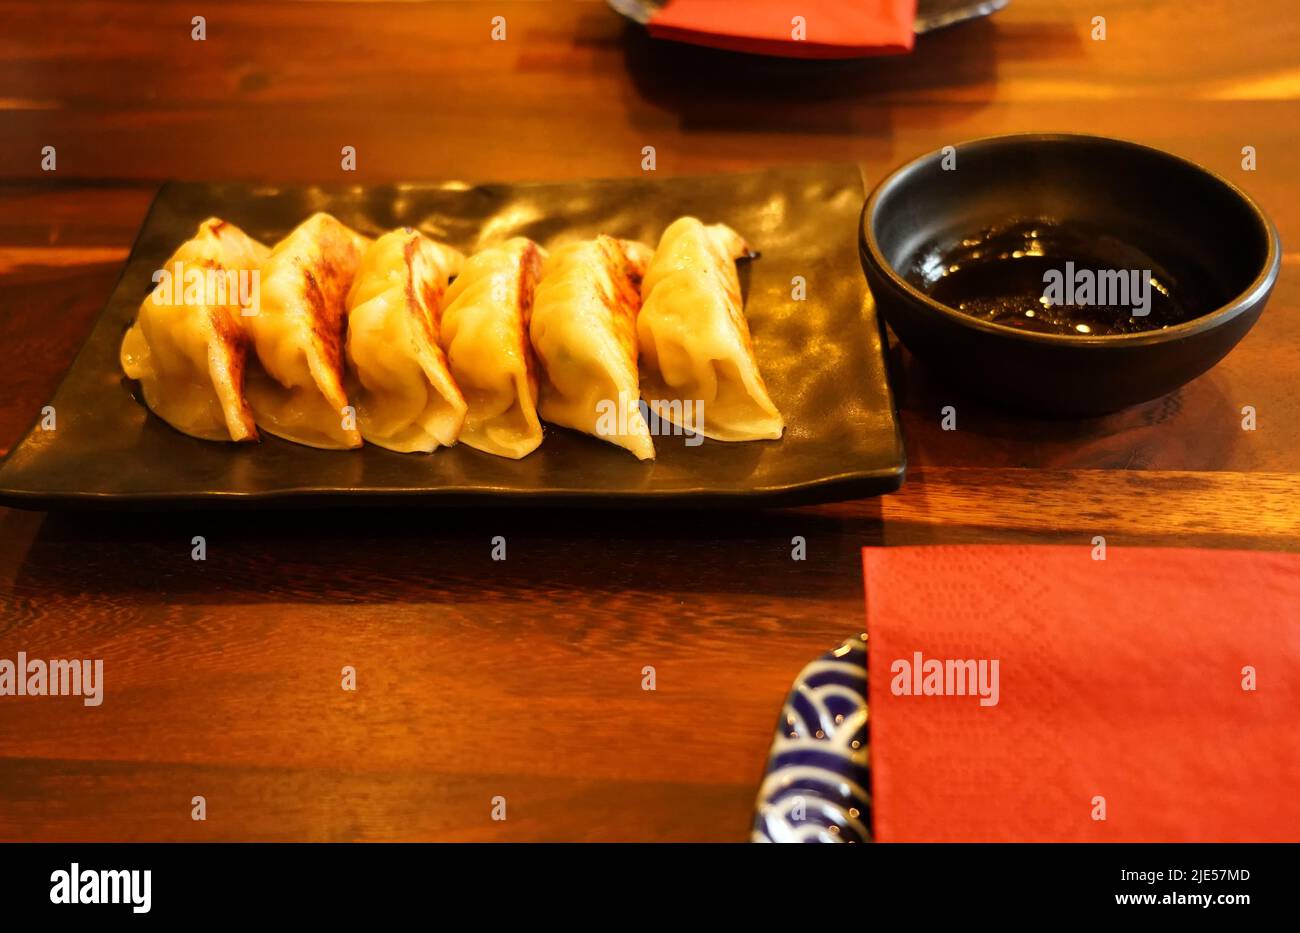 Primo piano della gyoza giapponese in un ristorante di Düsseldorf/Germania. I gyoza sono gnocchi con vari ripieni, ad esempio carne di maiale tritata o verdure. Foto Stock